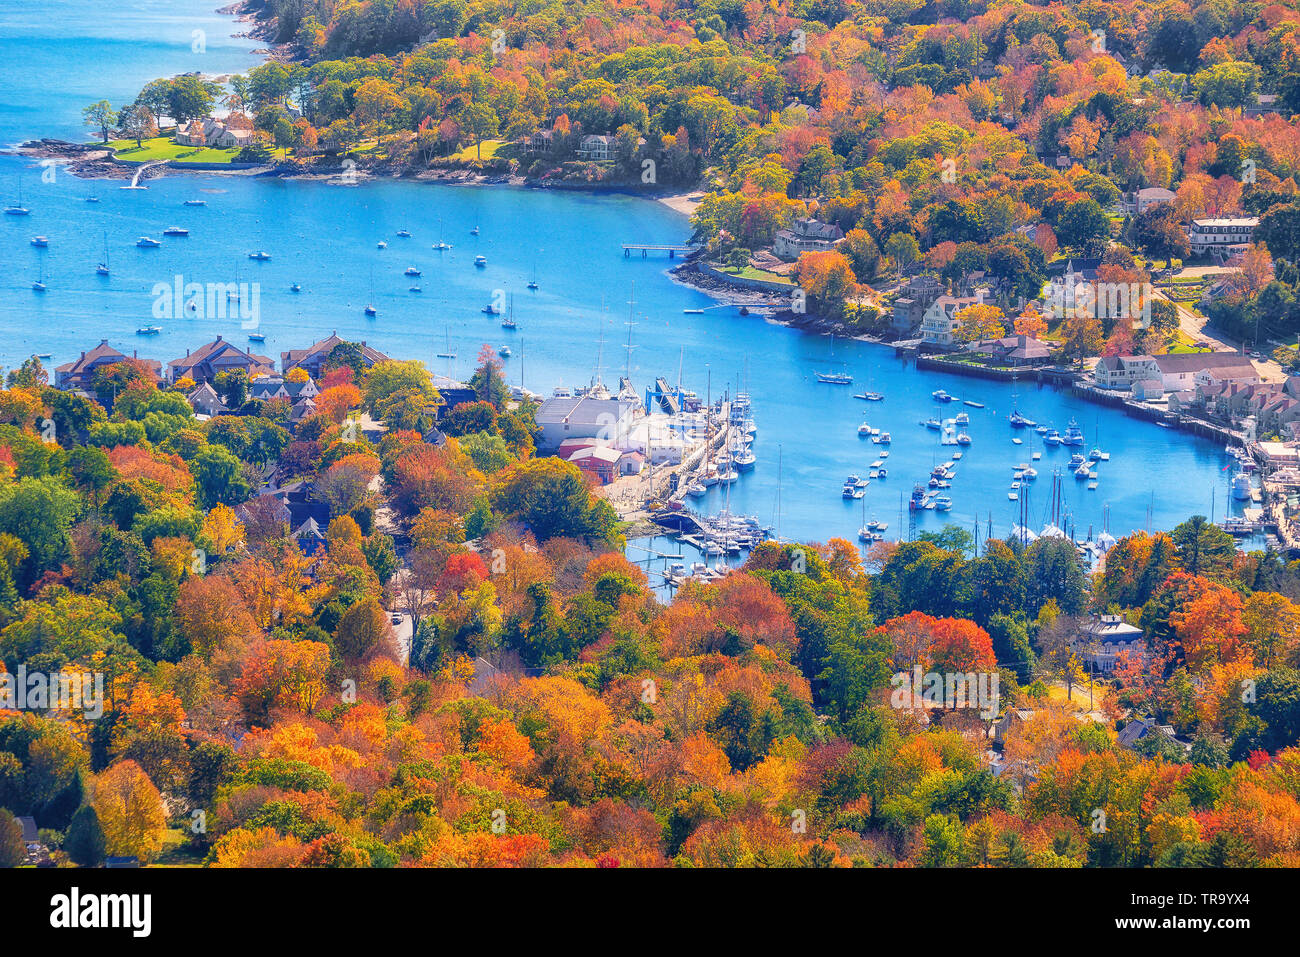 Vue depuis le mont Battie surplombant le port de Camden, Maine. Beau feuillage d'Automne Couleurs d'octobre. Banque D'Images